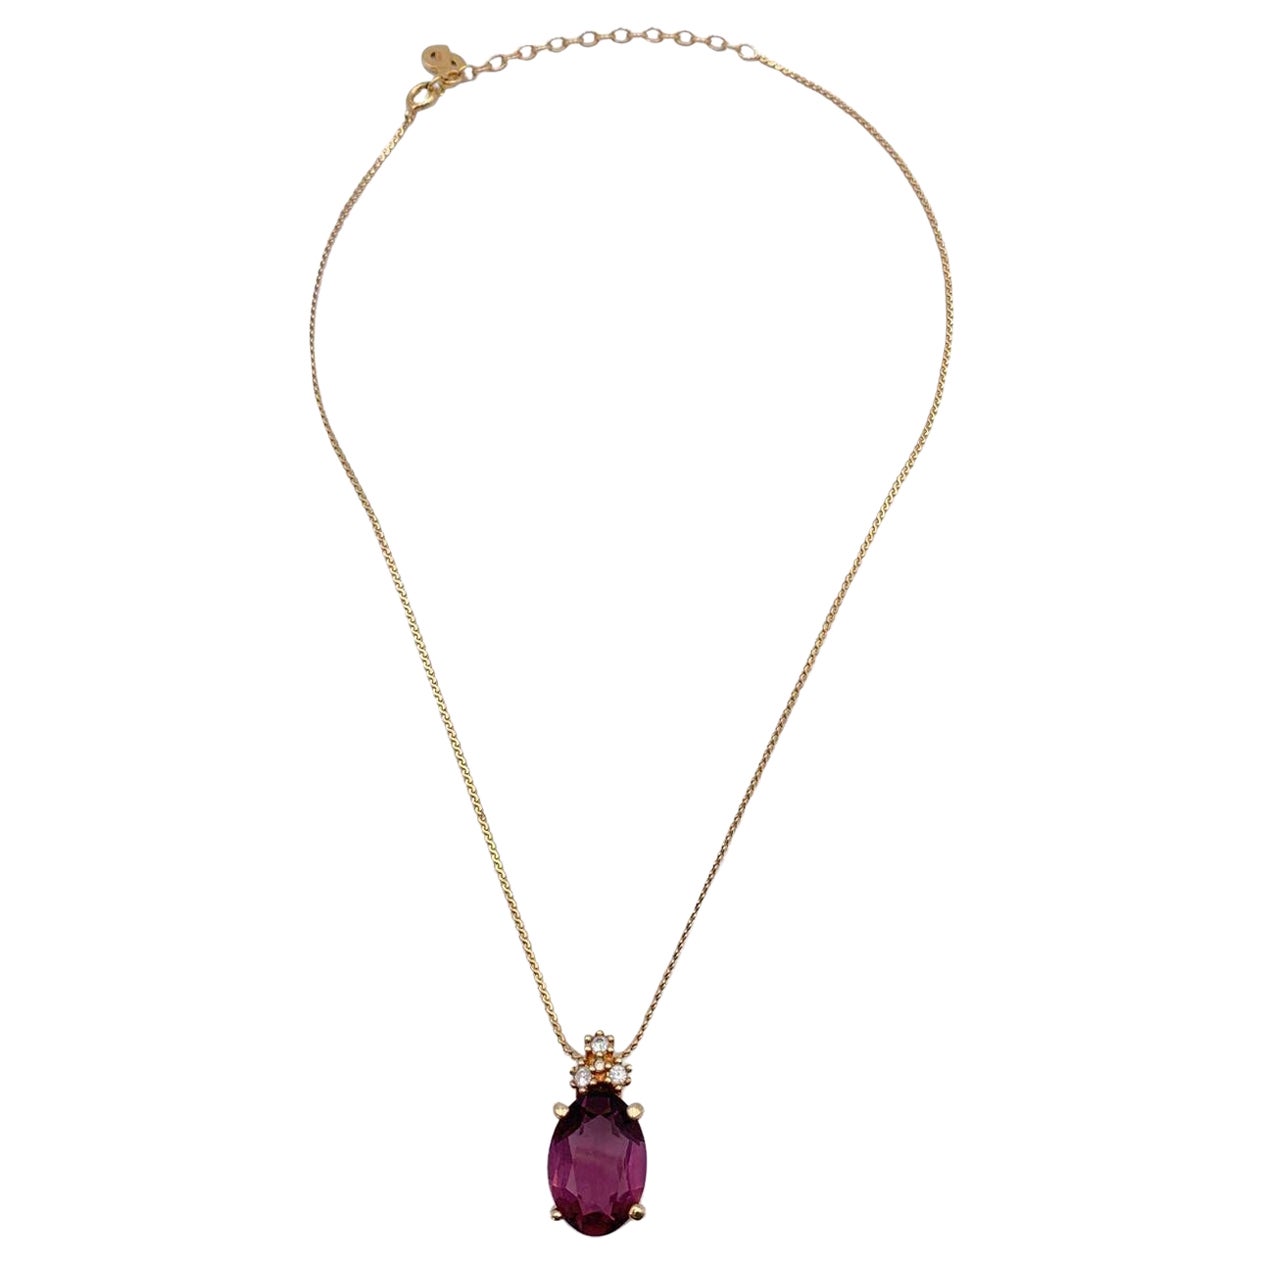 Christian Dior, collier pendentif vintage en or et cristal violet ovale